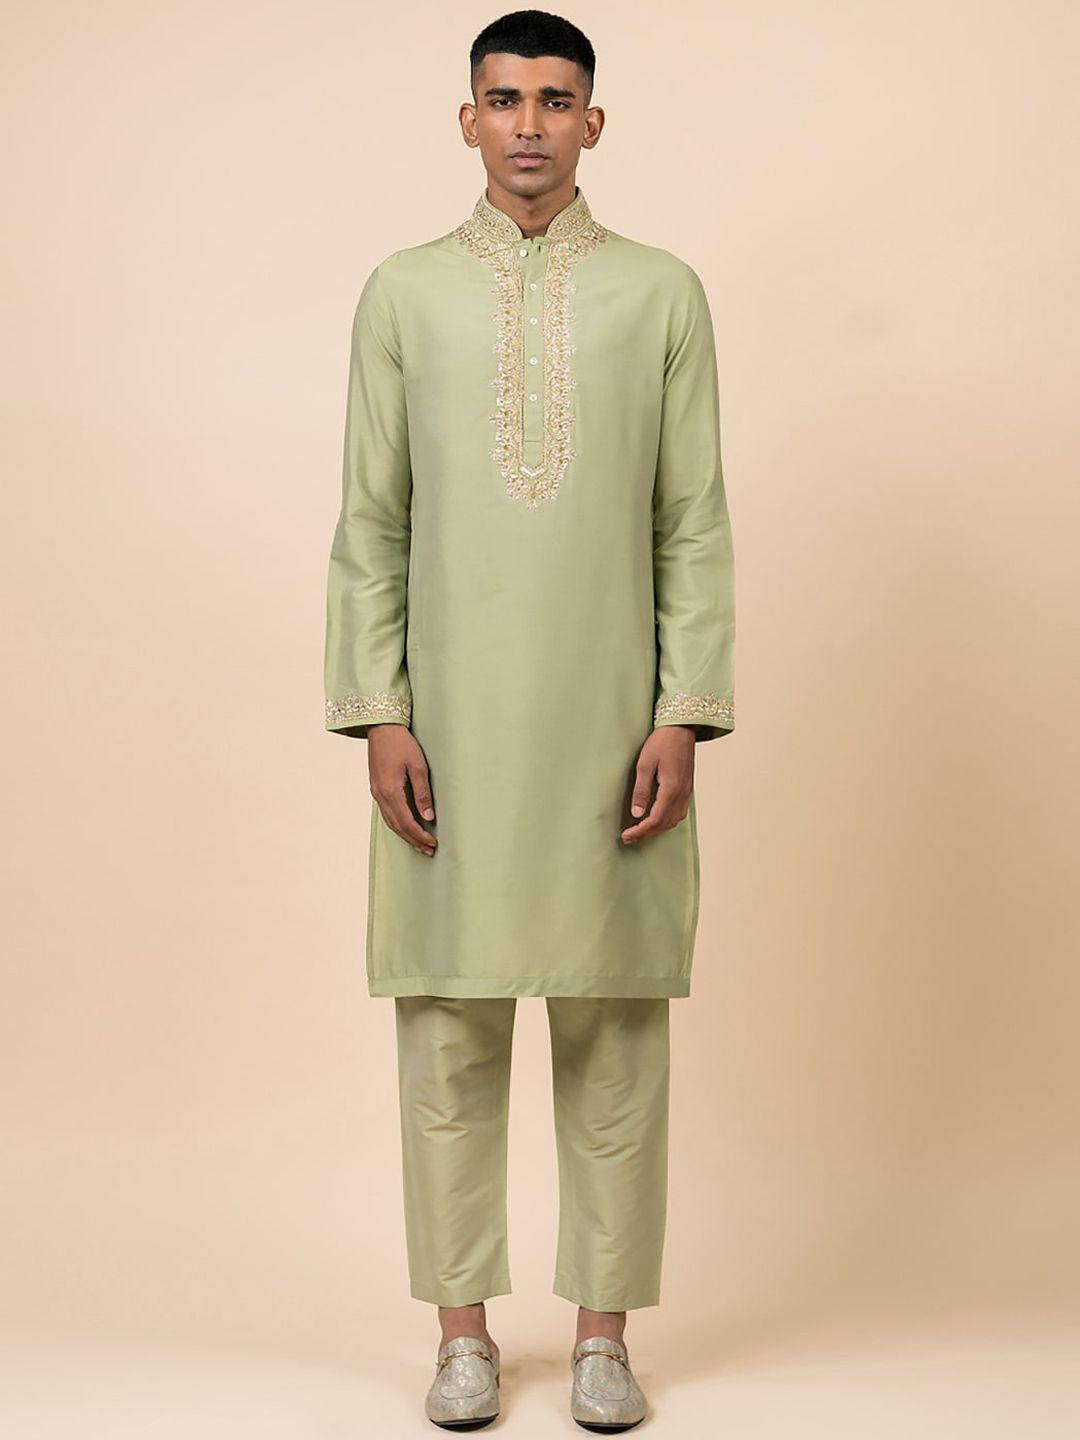 tasva men green ethnic motifs embroidered thread work kurta with trousers